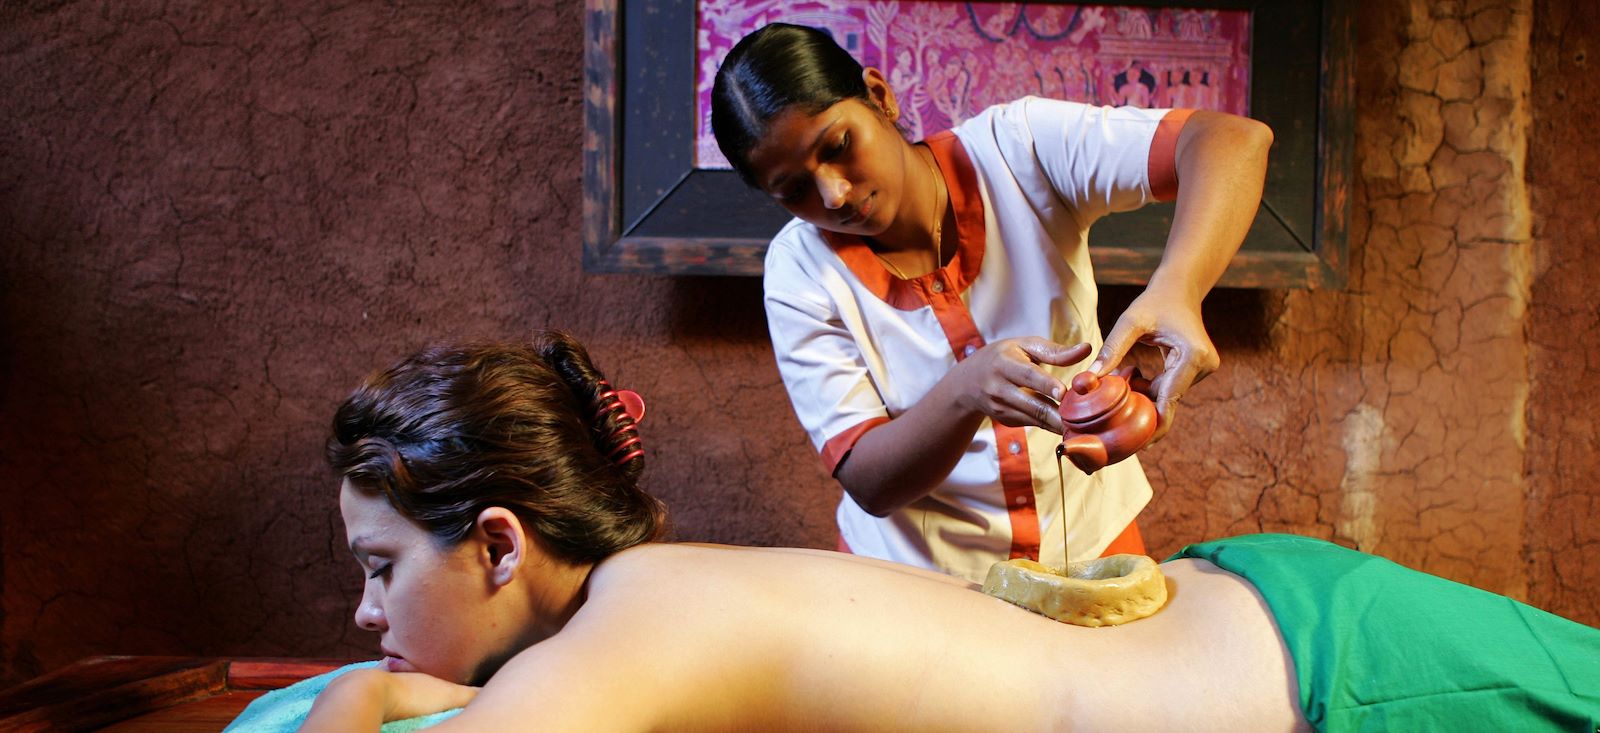 Voyage balnéo et thalasso - Le Sri Lanka ou le bien-être au féminin !